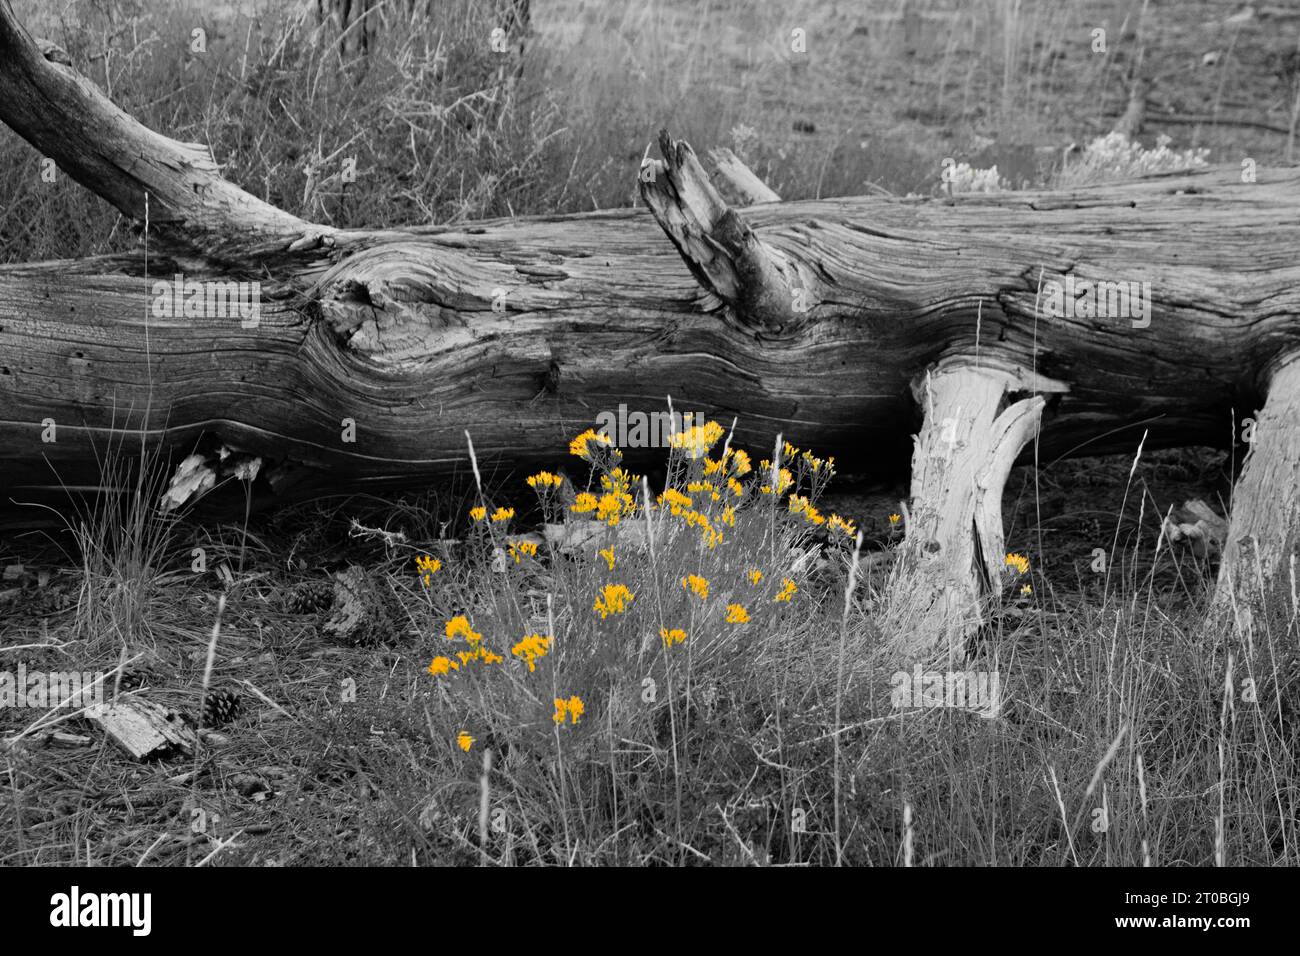 Flores amarillas junto al árbol talado, con líneas texturizadas en la corteza del árbol. Foto de stock